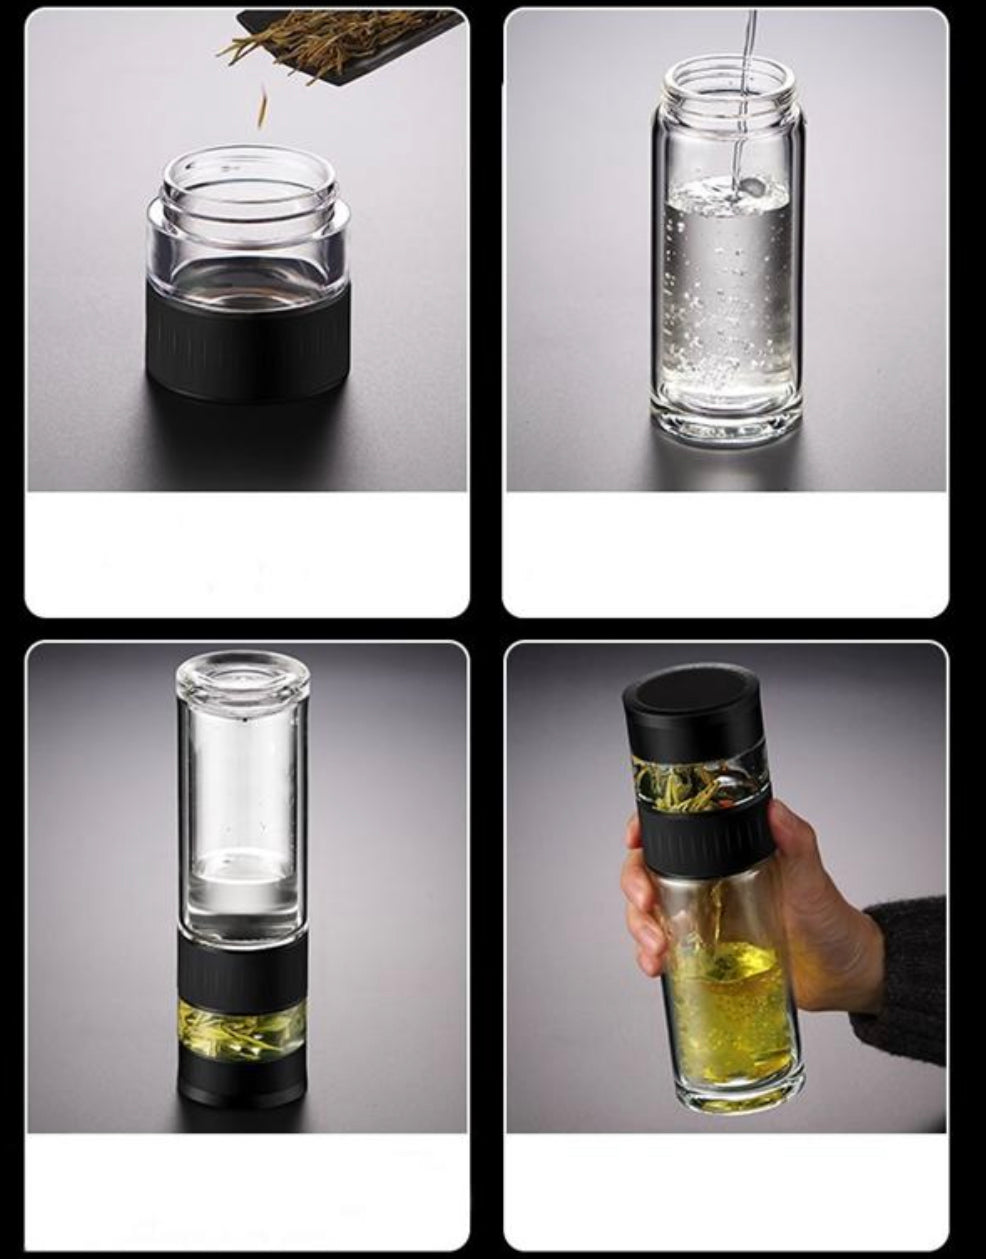 glas mit hohem borosilikatgehalt ist gesund und hygienisch